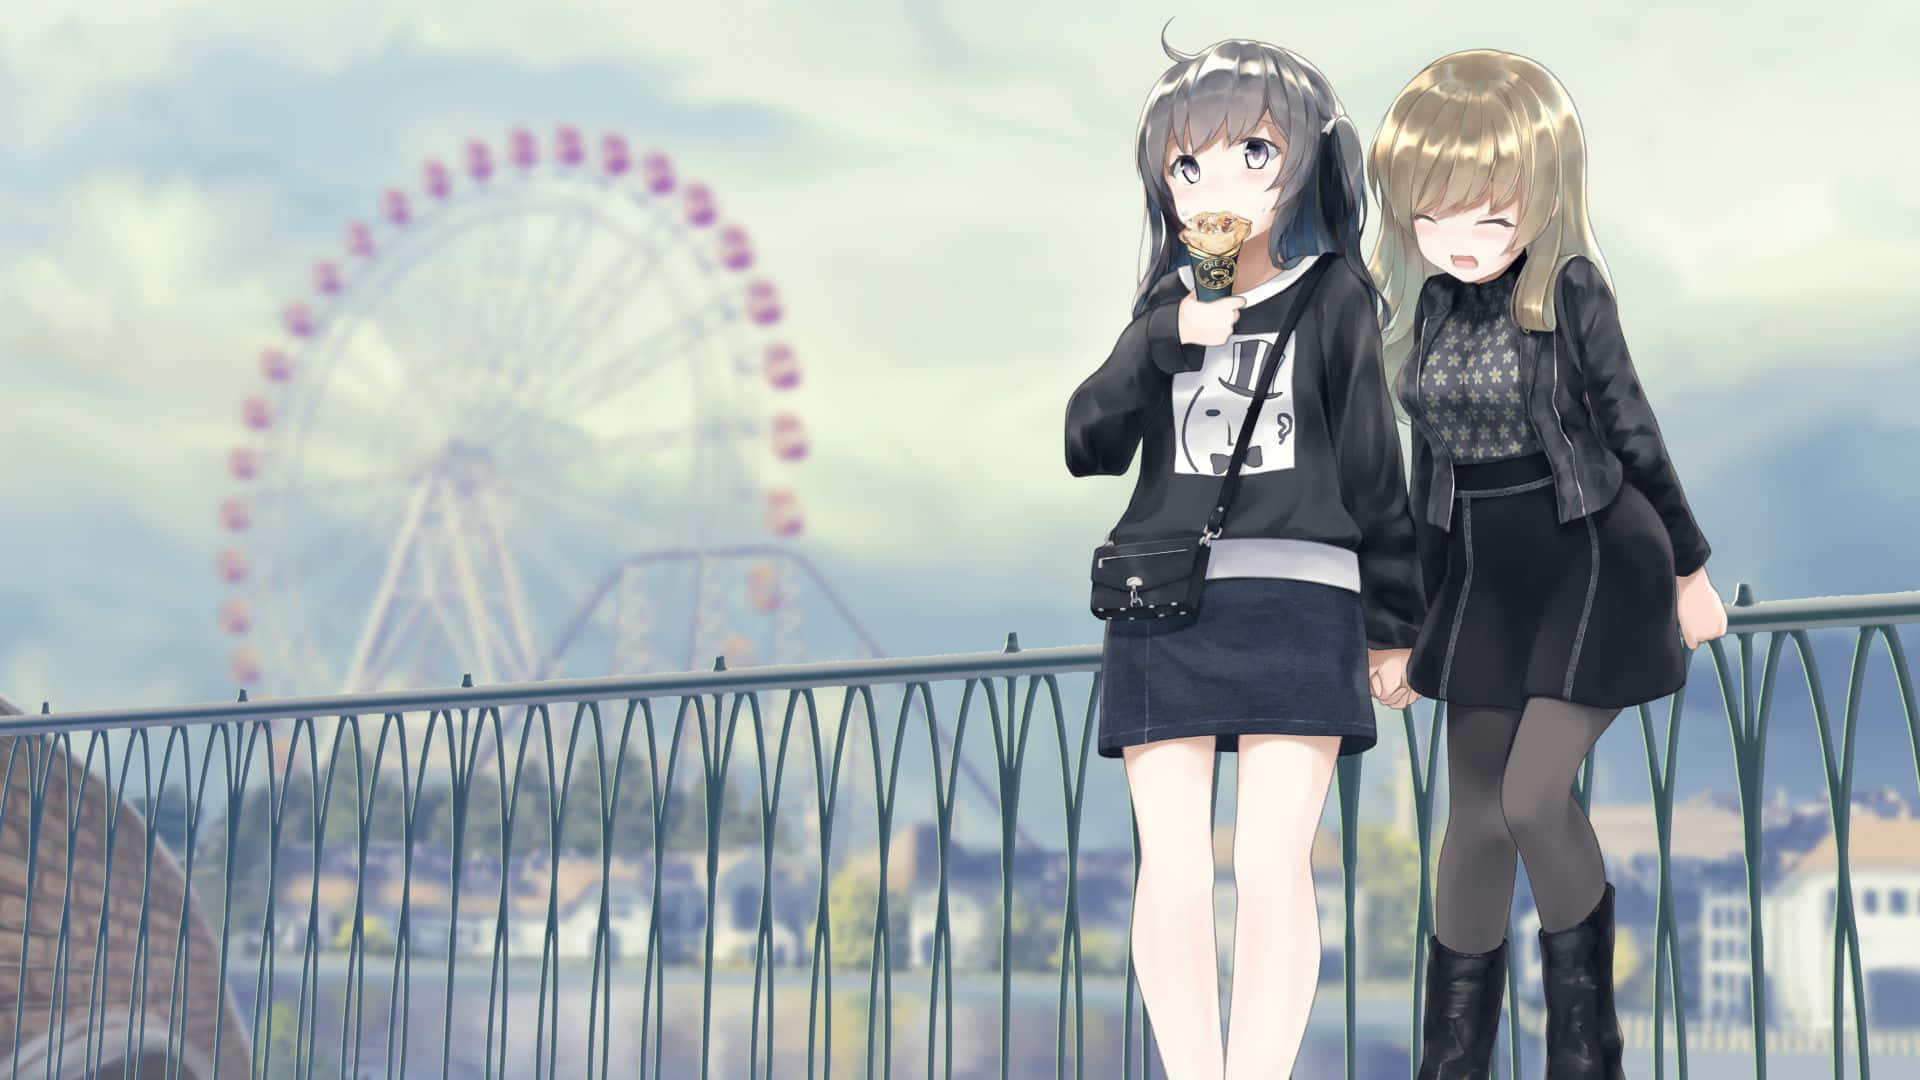 Anime Park Girls Ferris Wheel Background